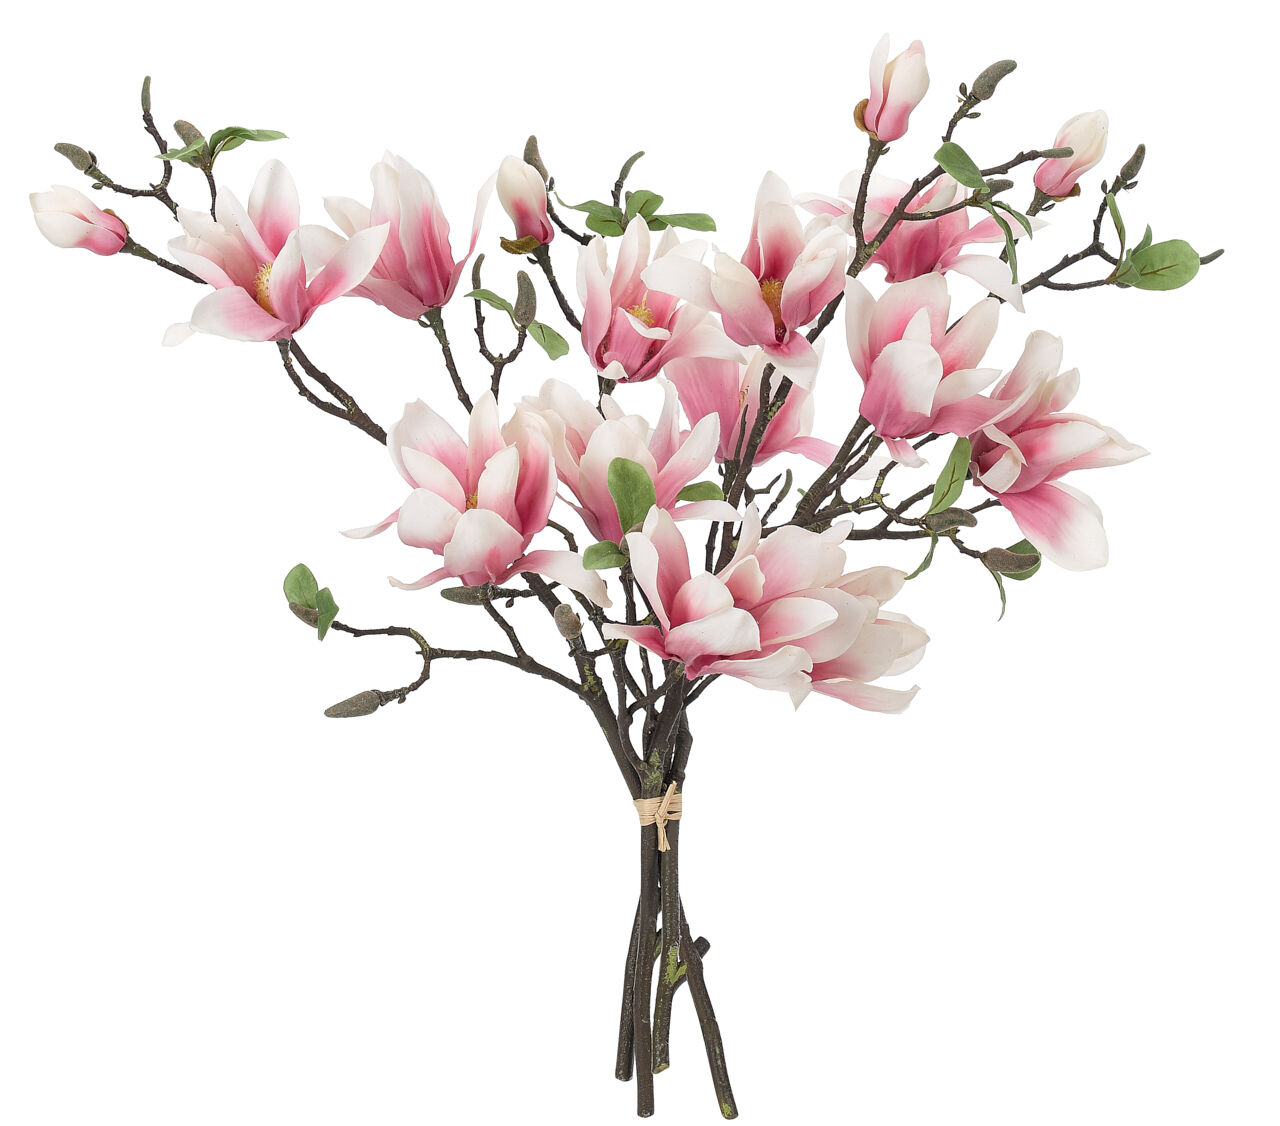 pink magnolia flower branch